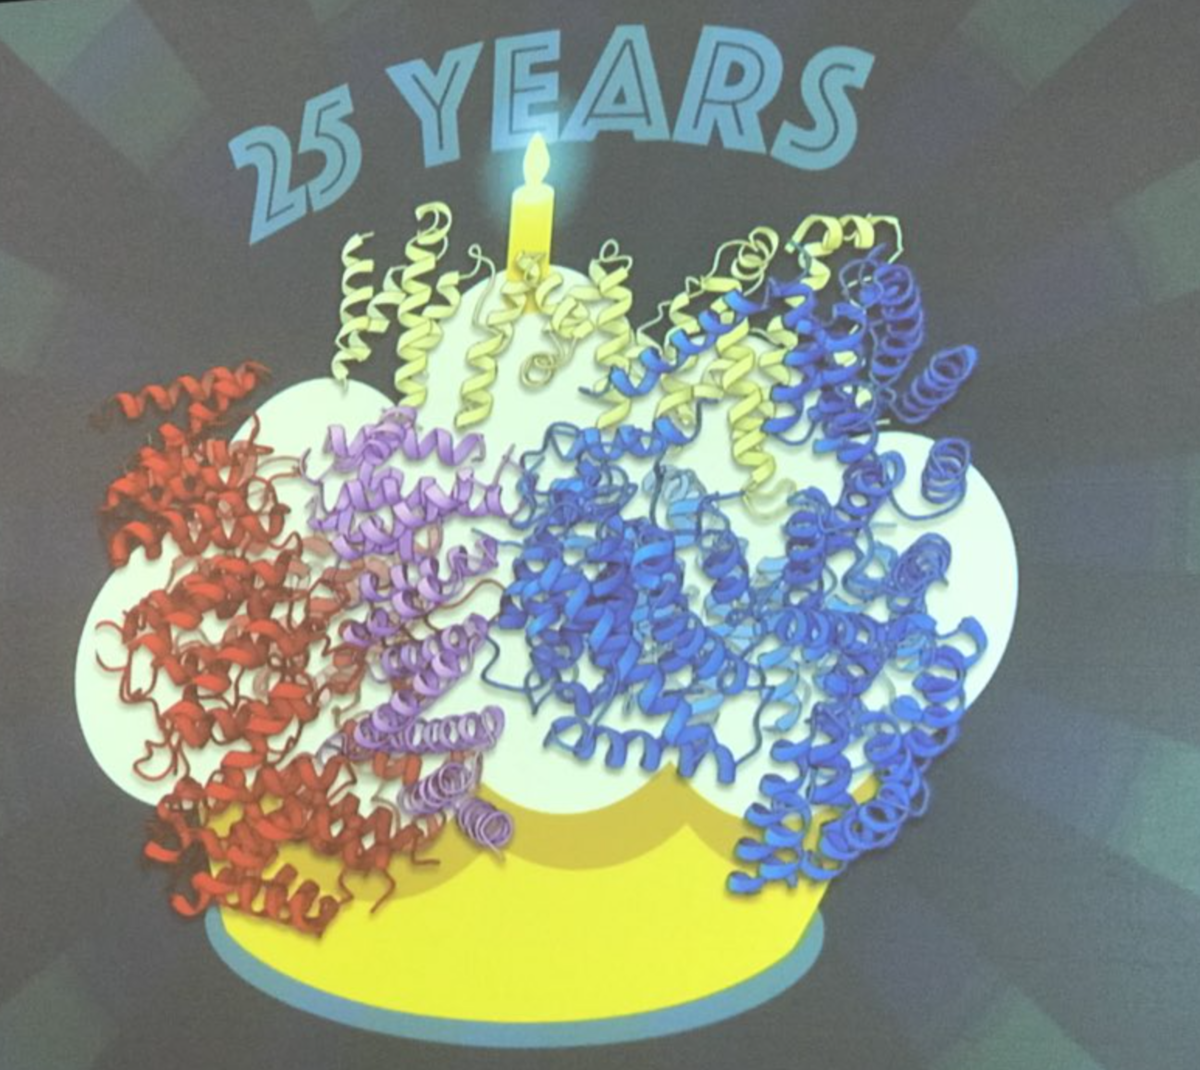 La structure de la protéine huntingtine présentée par le Dr Kochanek comme un gâteau d'anniversaire pour le 25ème anniversaire de la découverte du gène MH  